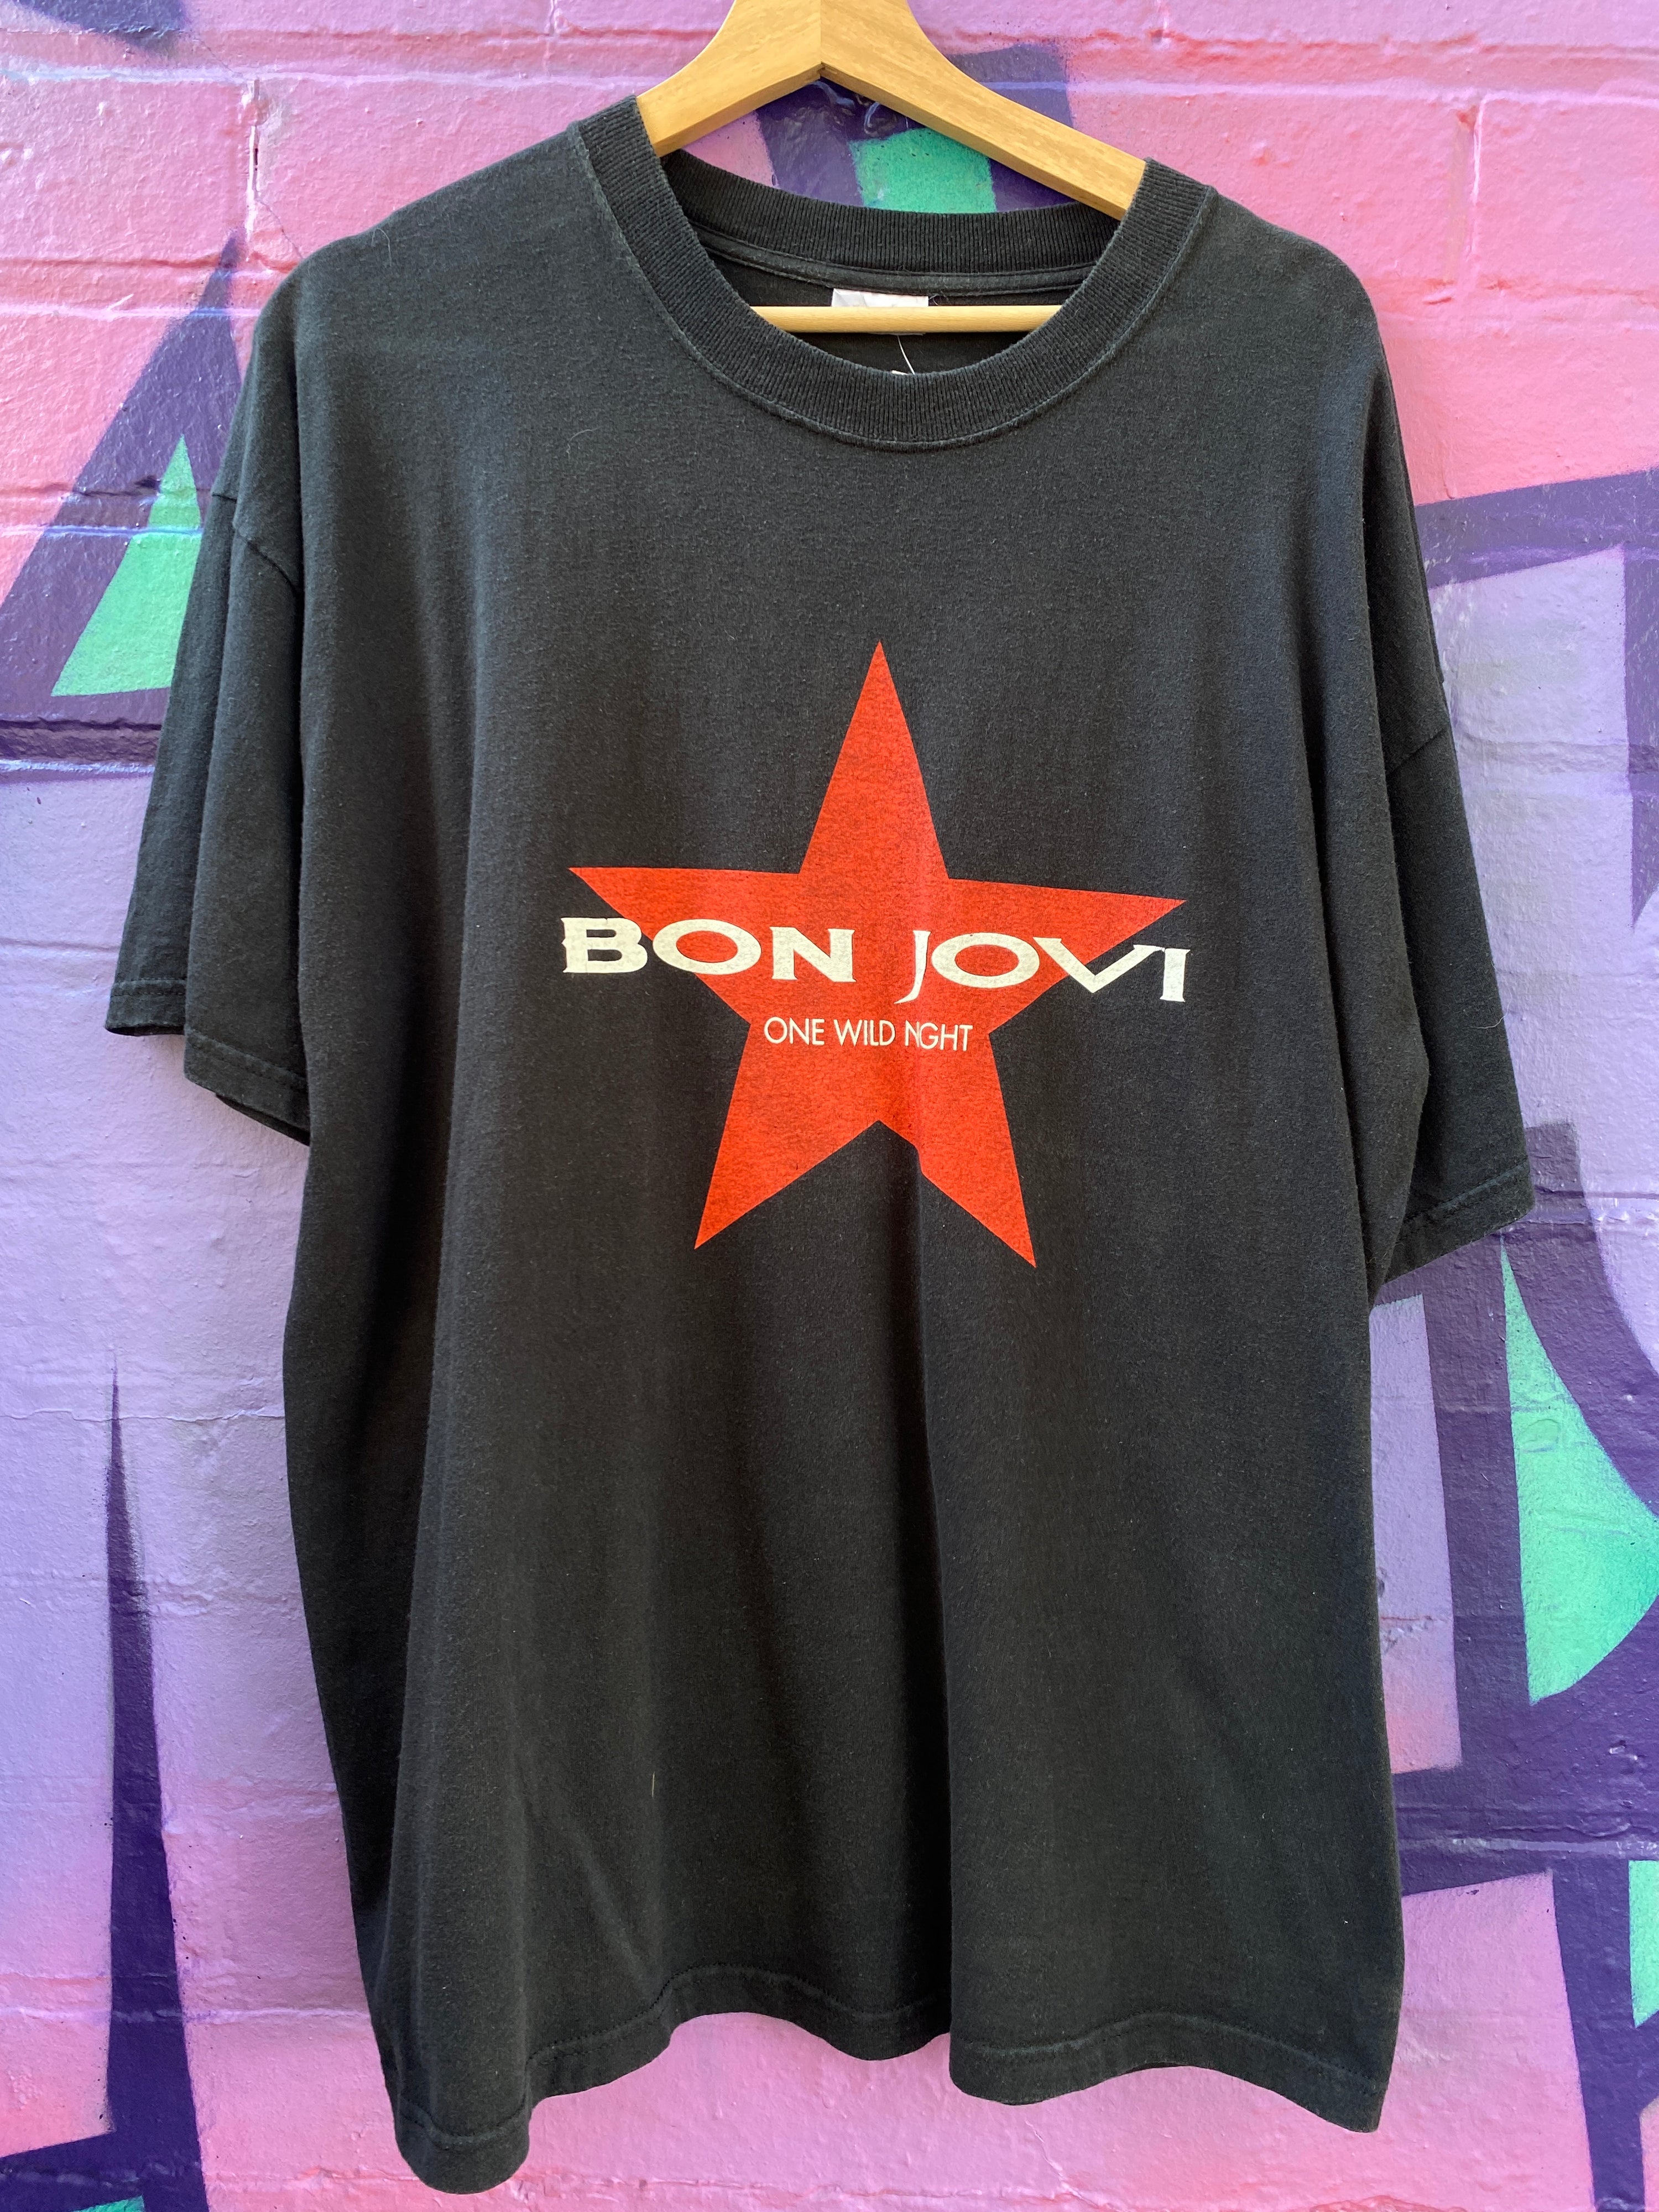 XL - 2001 Bon Jovi One Wild Night World Tour